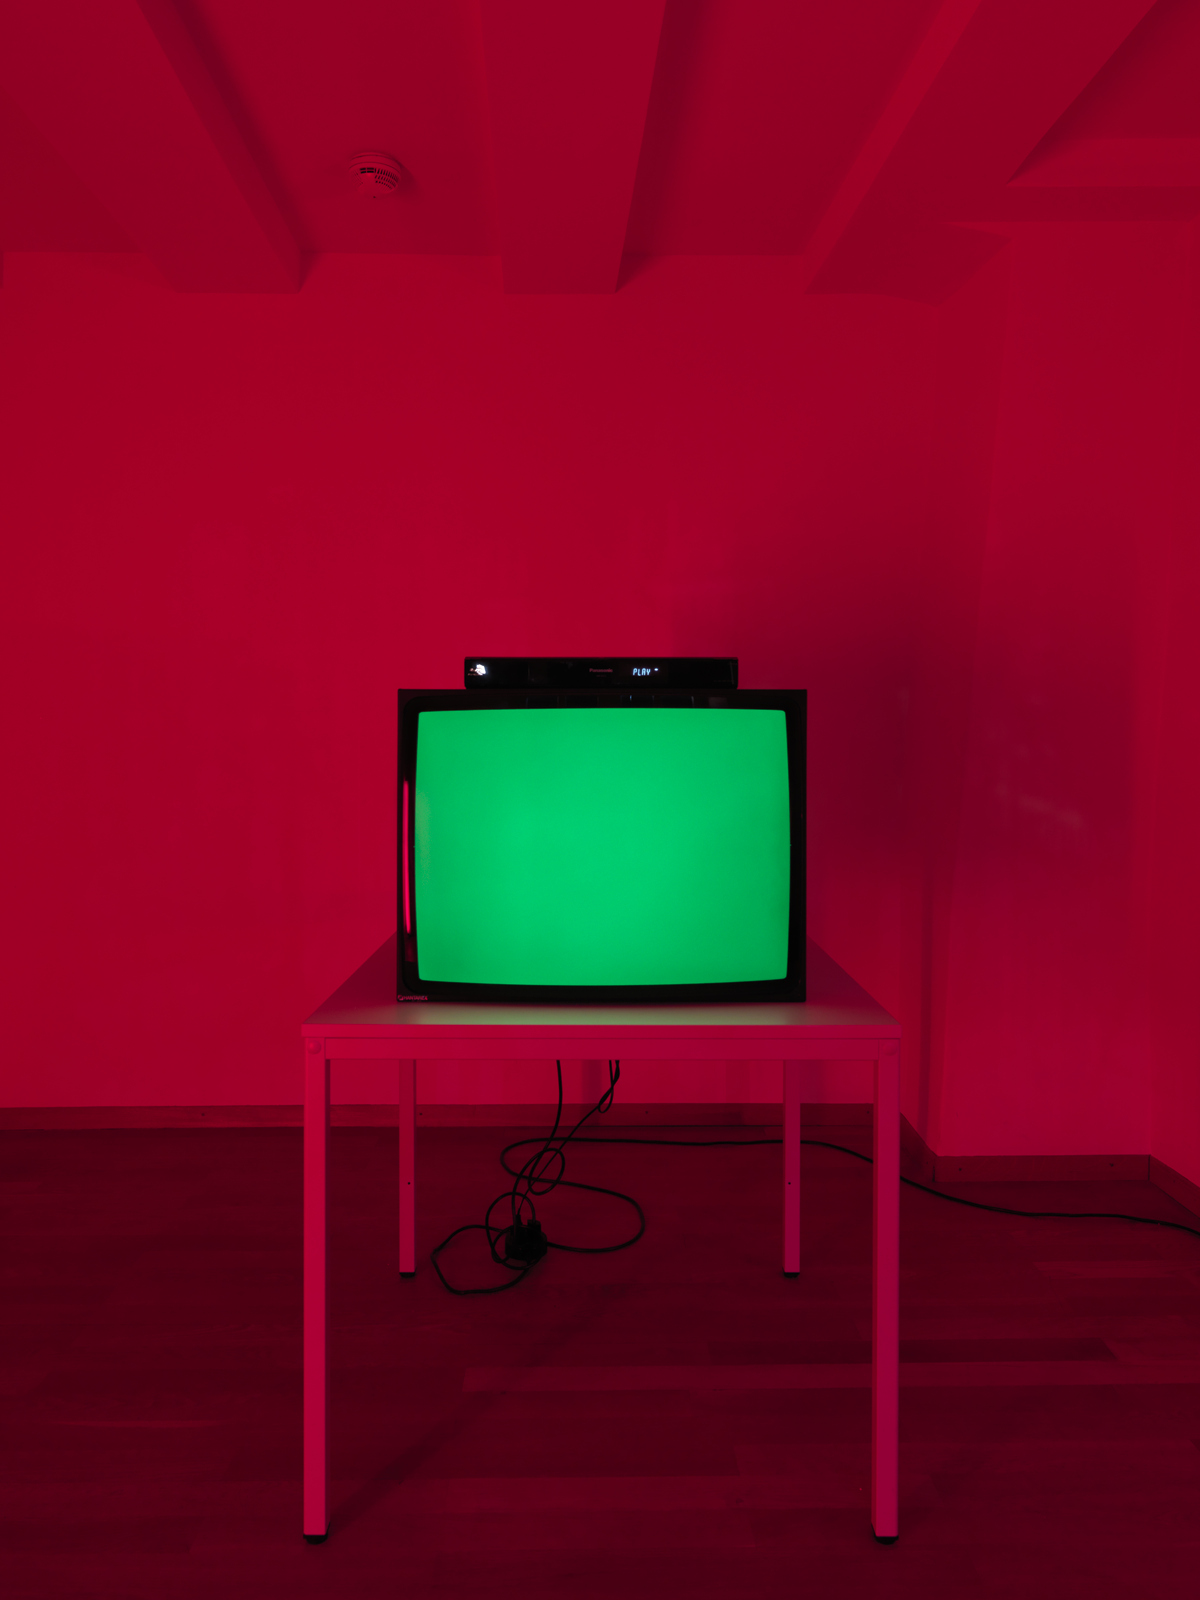 Heimo Zobernig / "Ohne Titel (In Red)", exhibition view, Kunsthalle Zürich / 2011